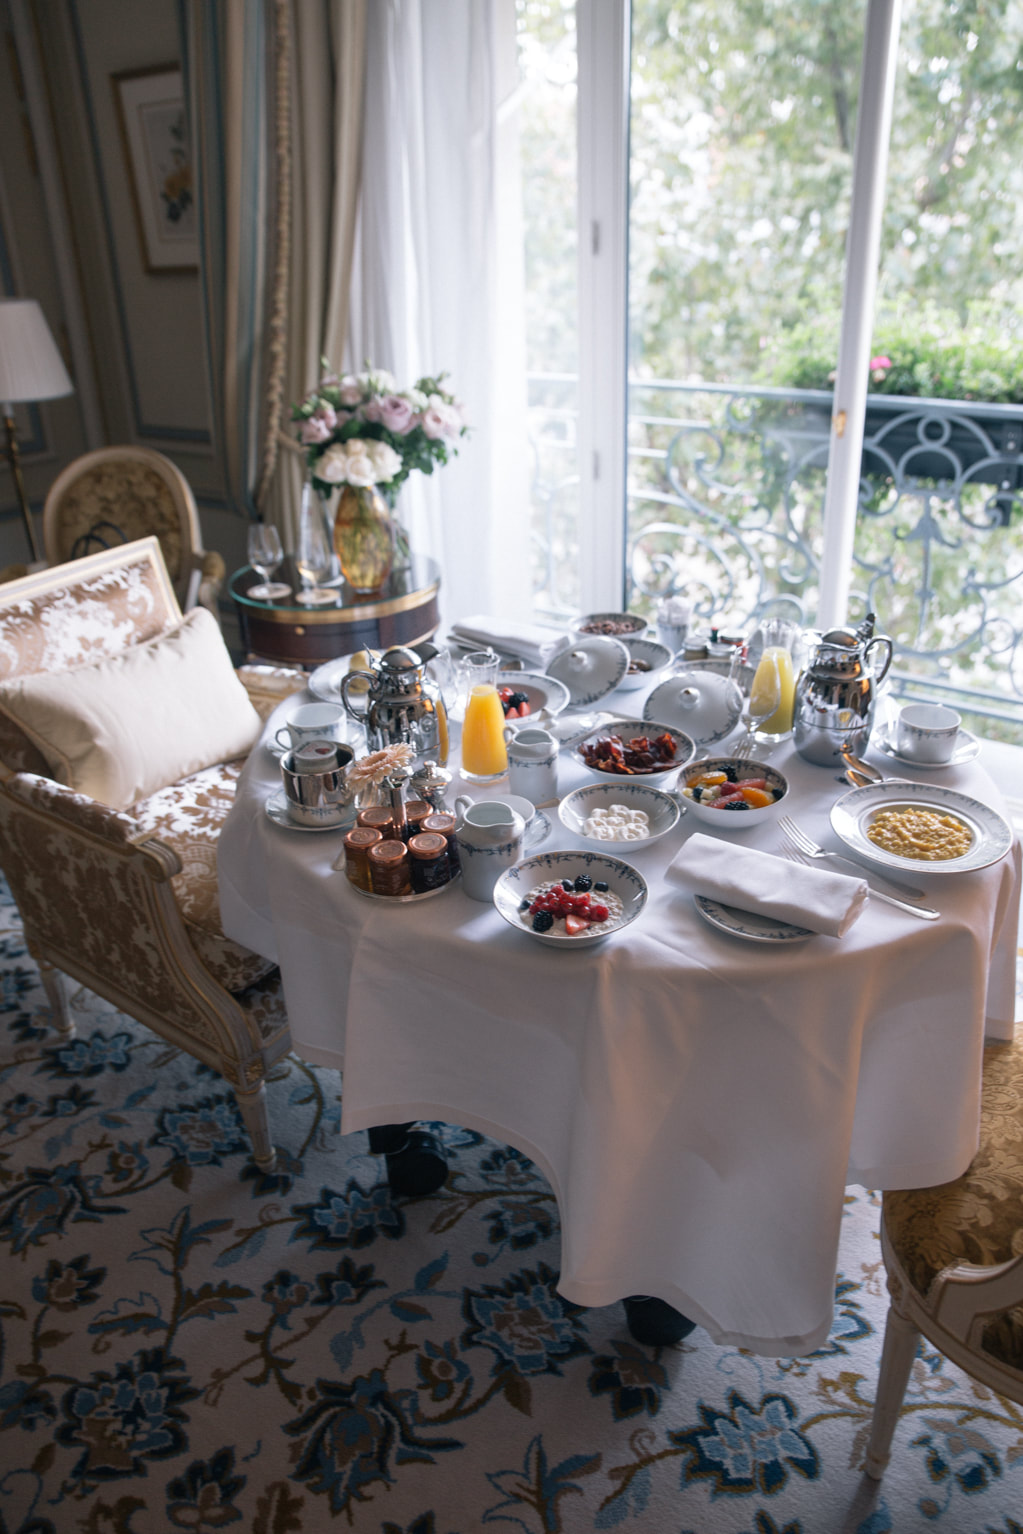 A Romantic weekend at Ritz Paris - Part trois by The Belle Blog